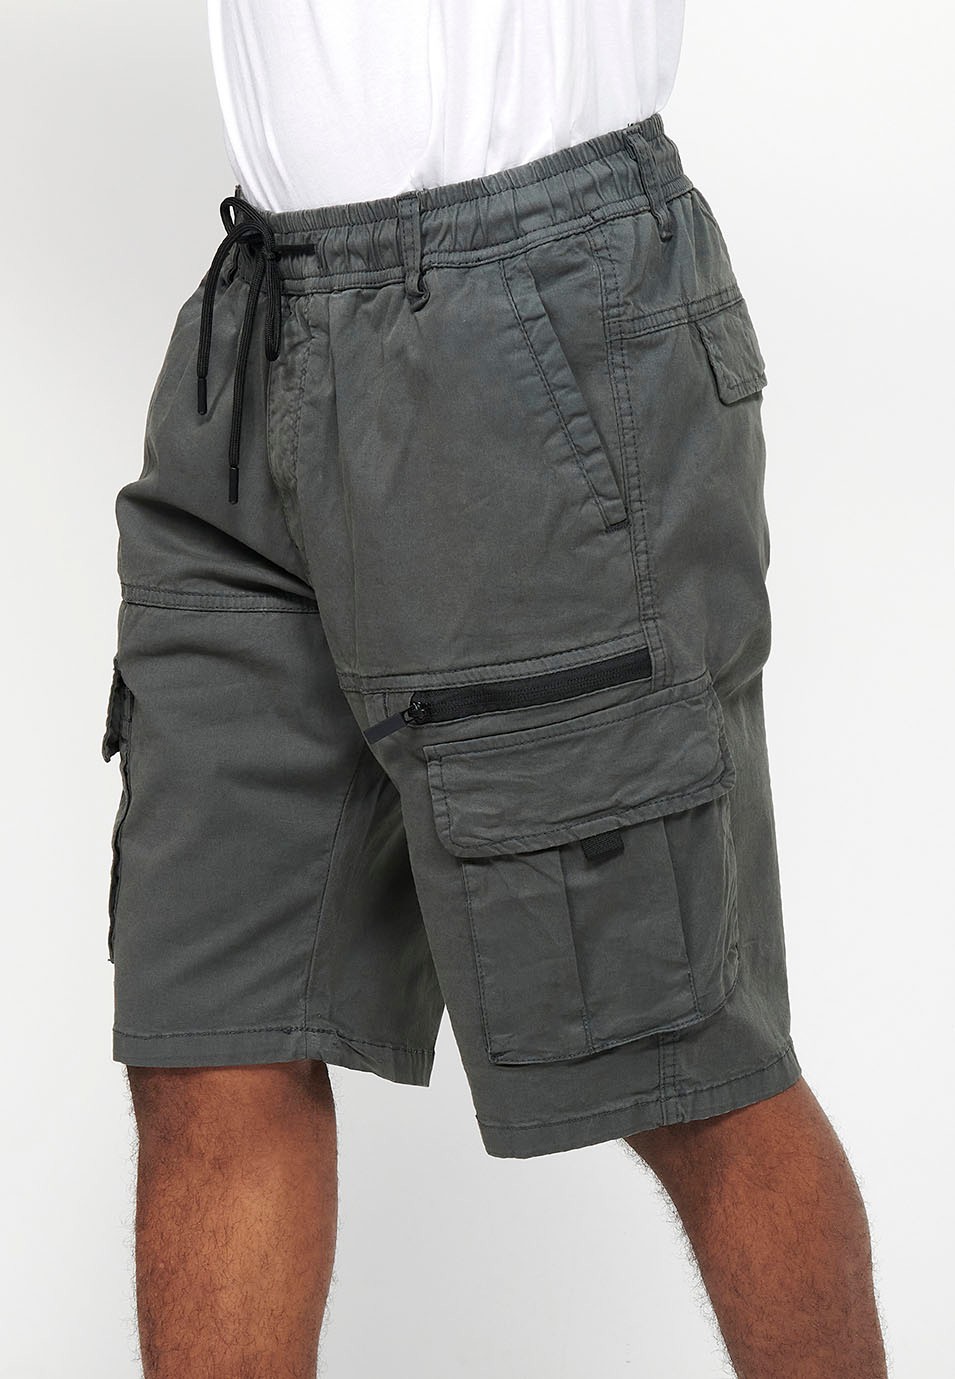 Pantalons curts càrrec amb Butxaques laterals amb solapa i Tancament davanter amb cremallera i botó Color Gris per a Home 1